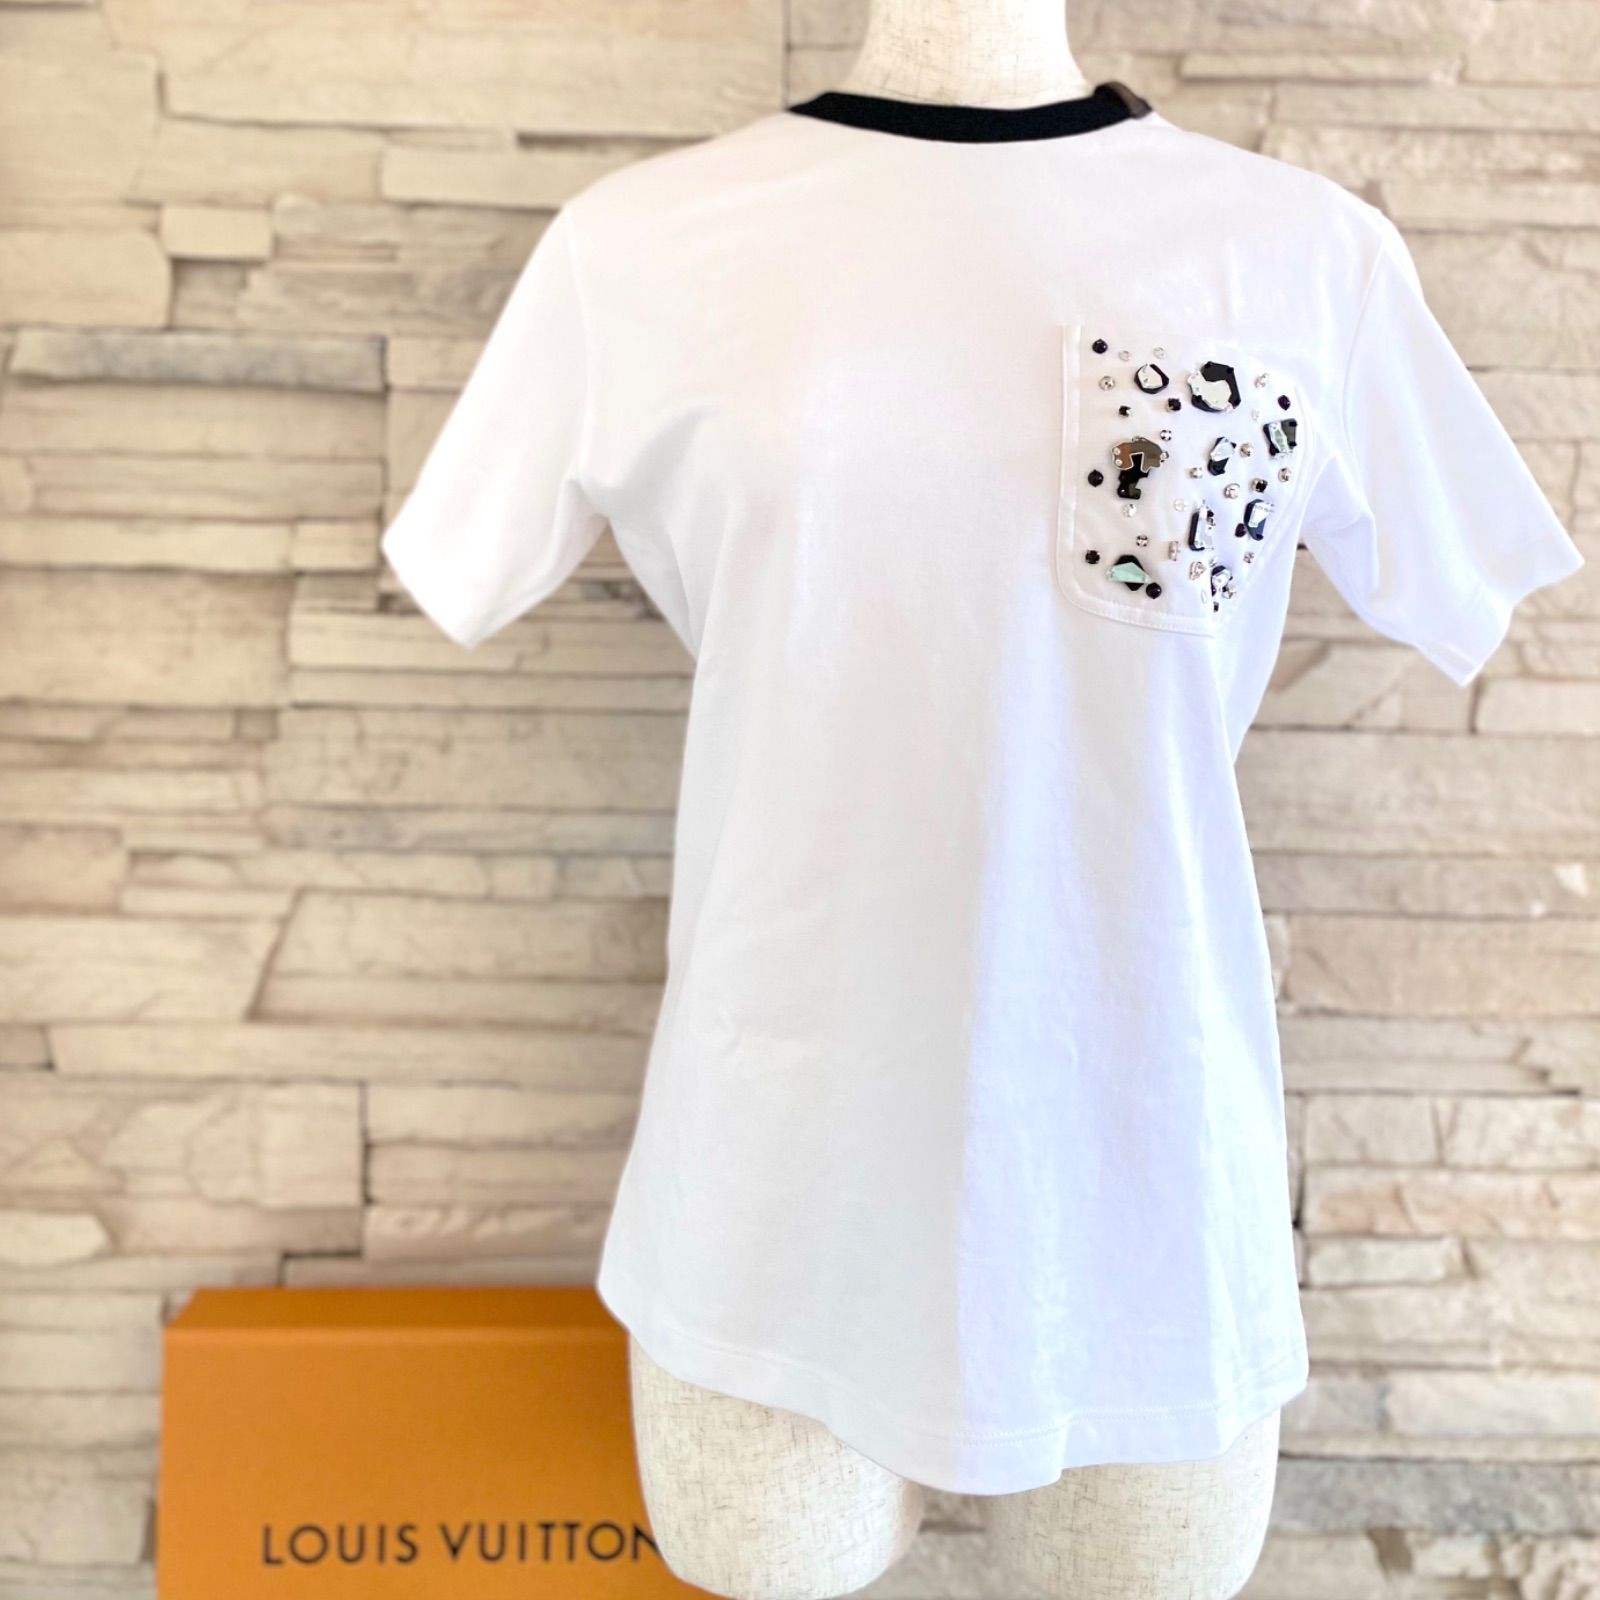 LOUIS VUITTON 】Tシャツ ホワイト ビジュー クリスタル - メルカリ